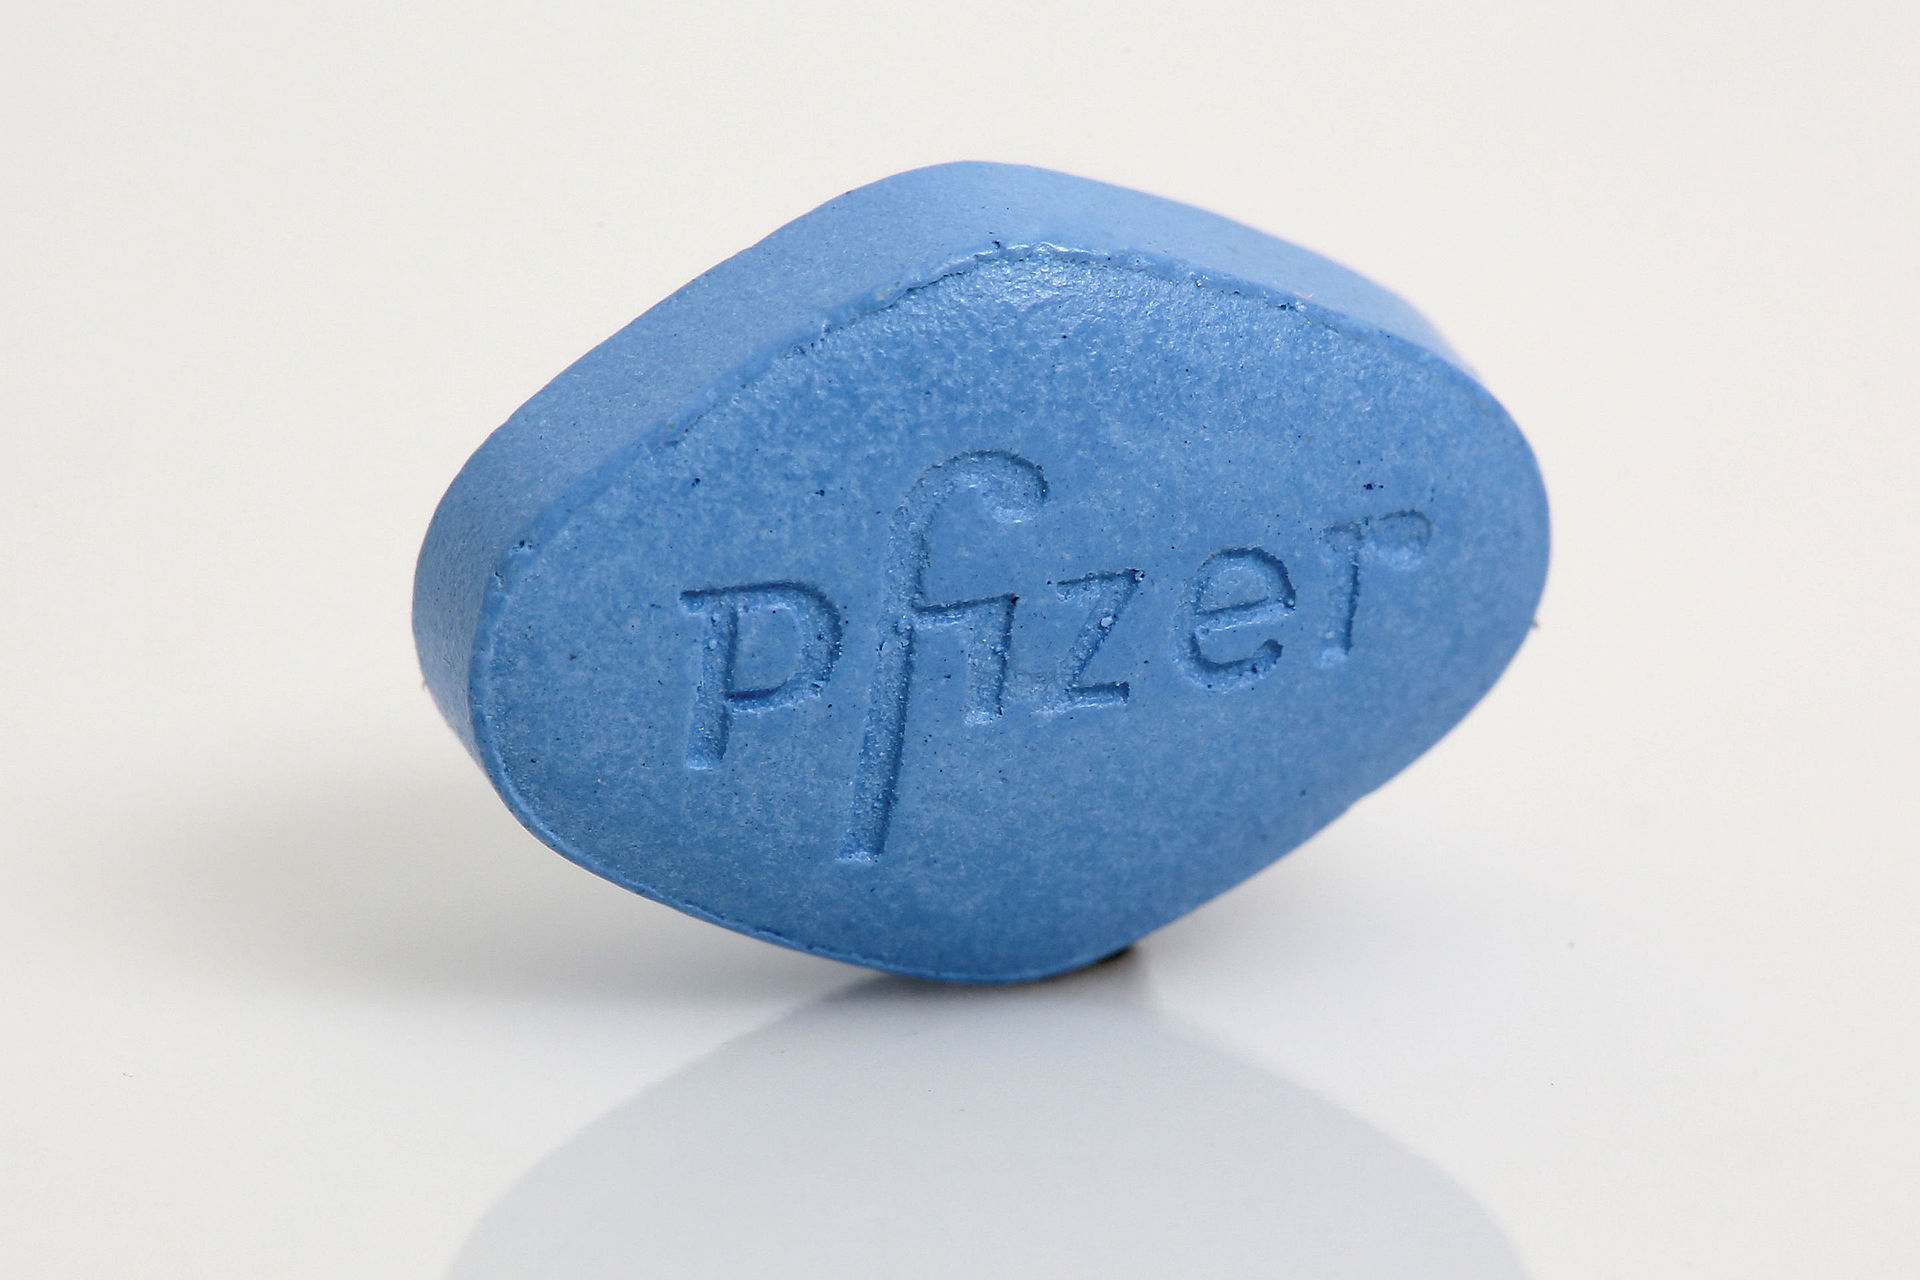 Die original blaue Pille - Viagra von Pfizer